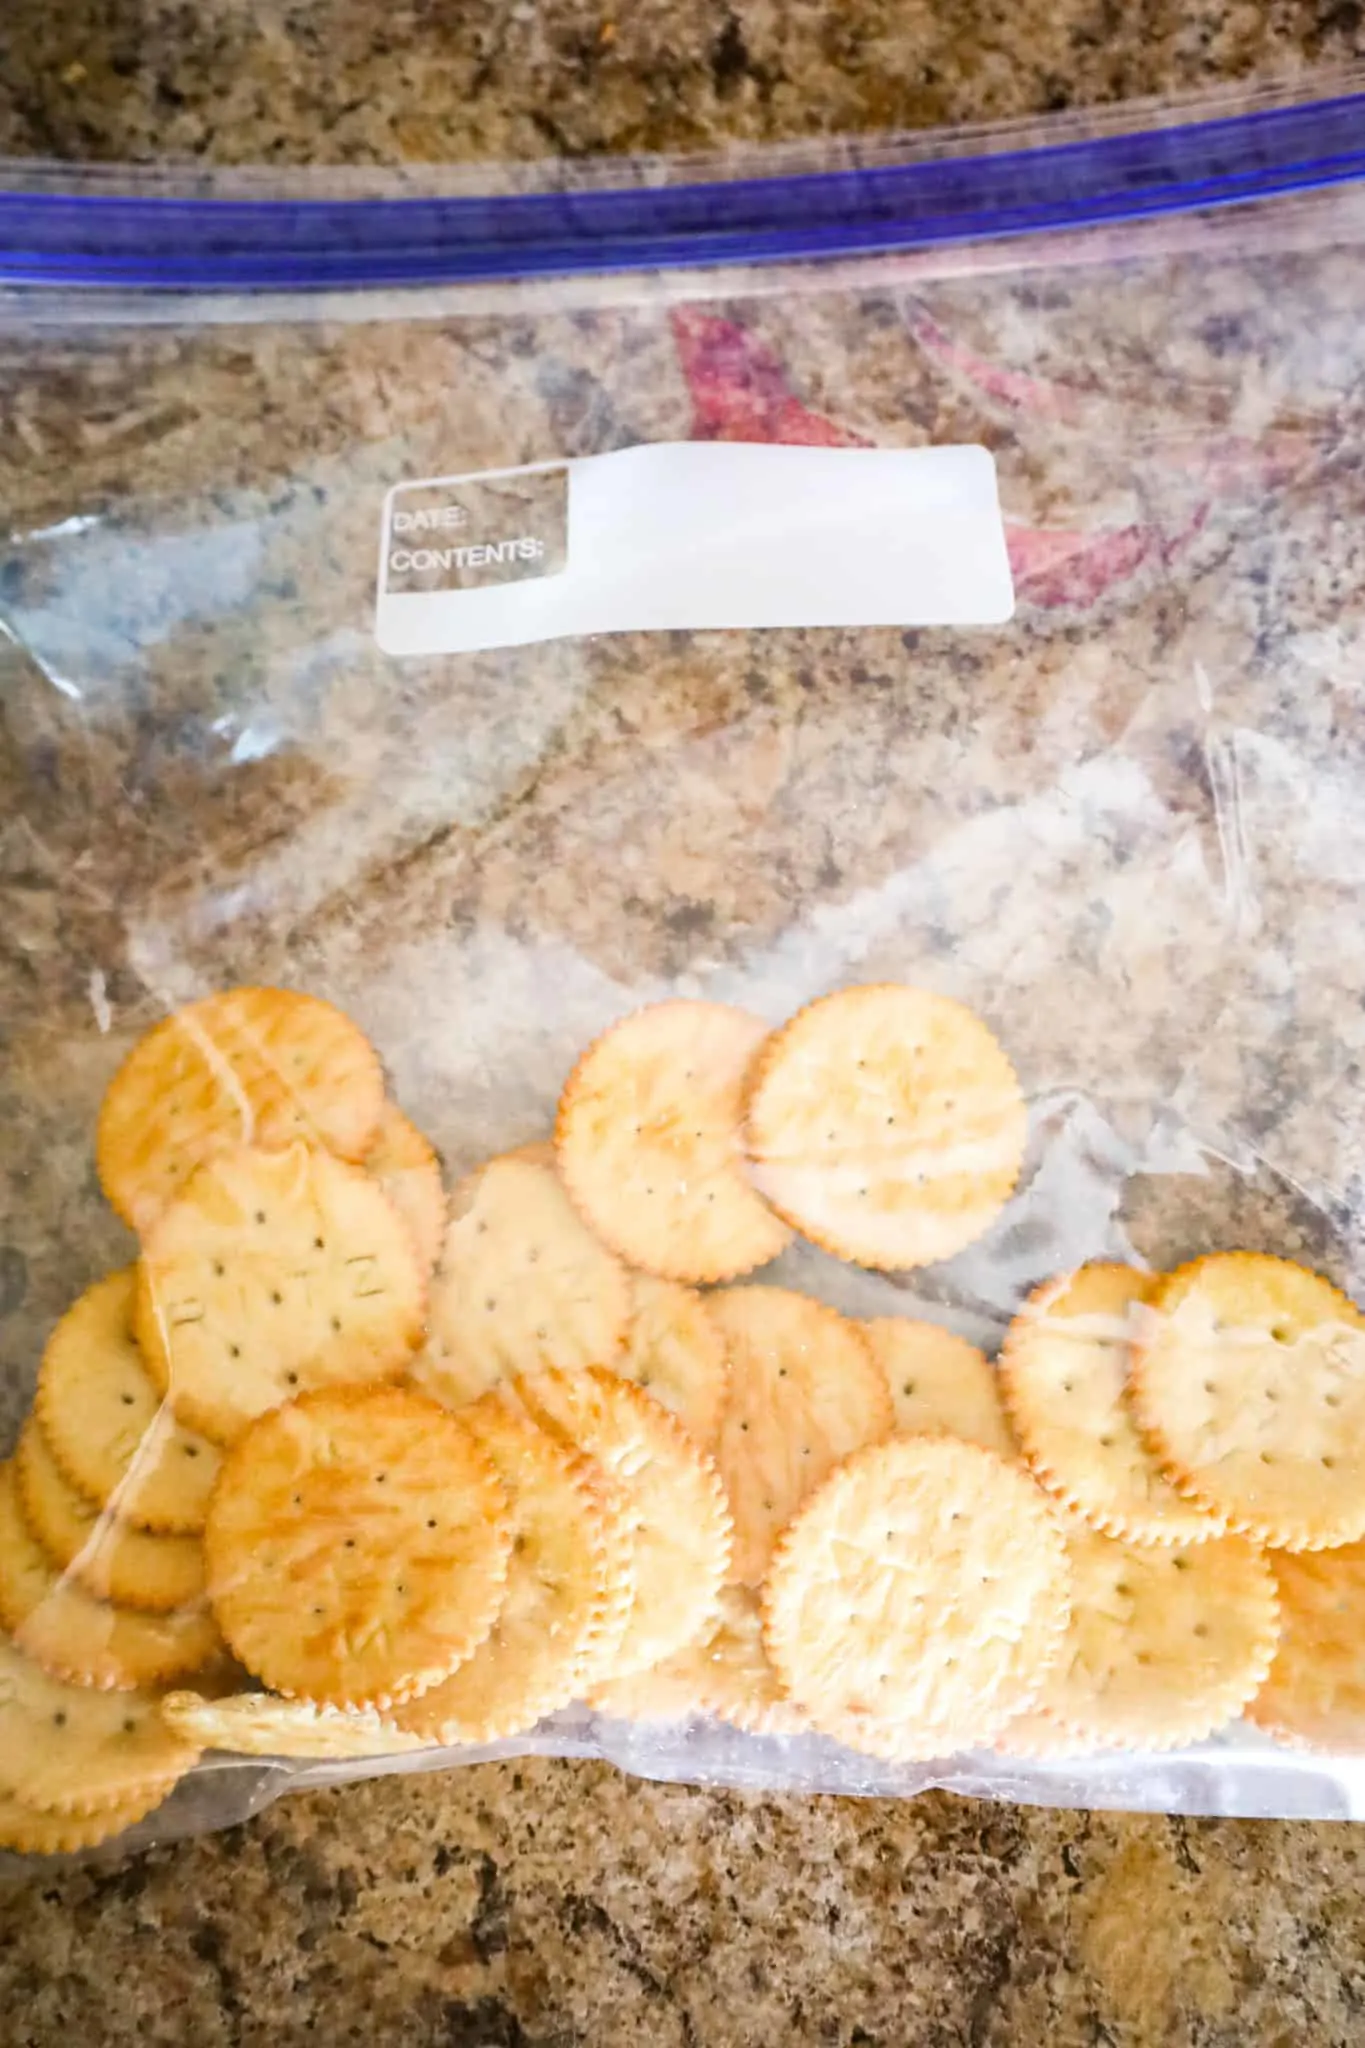 Ritz crackers in large ziploc bag